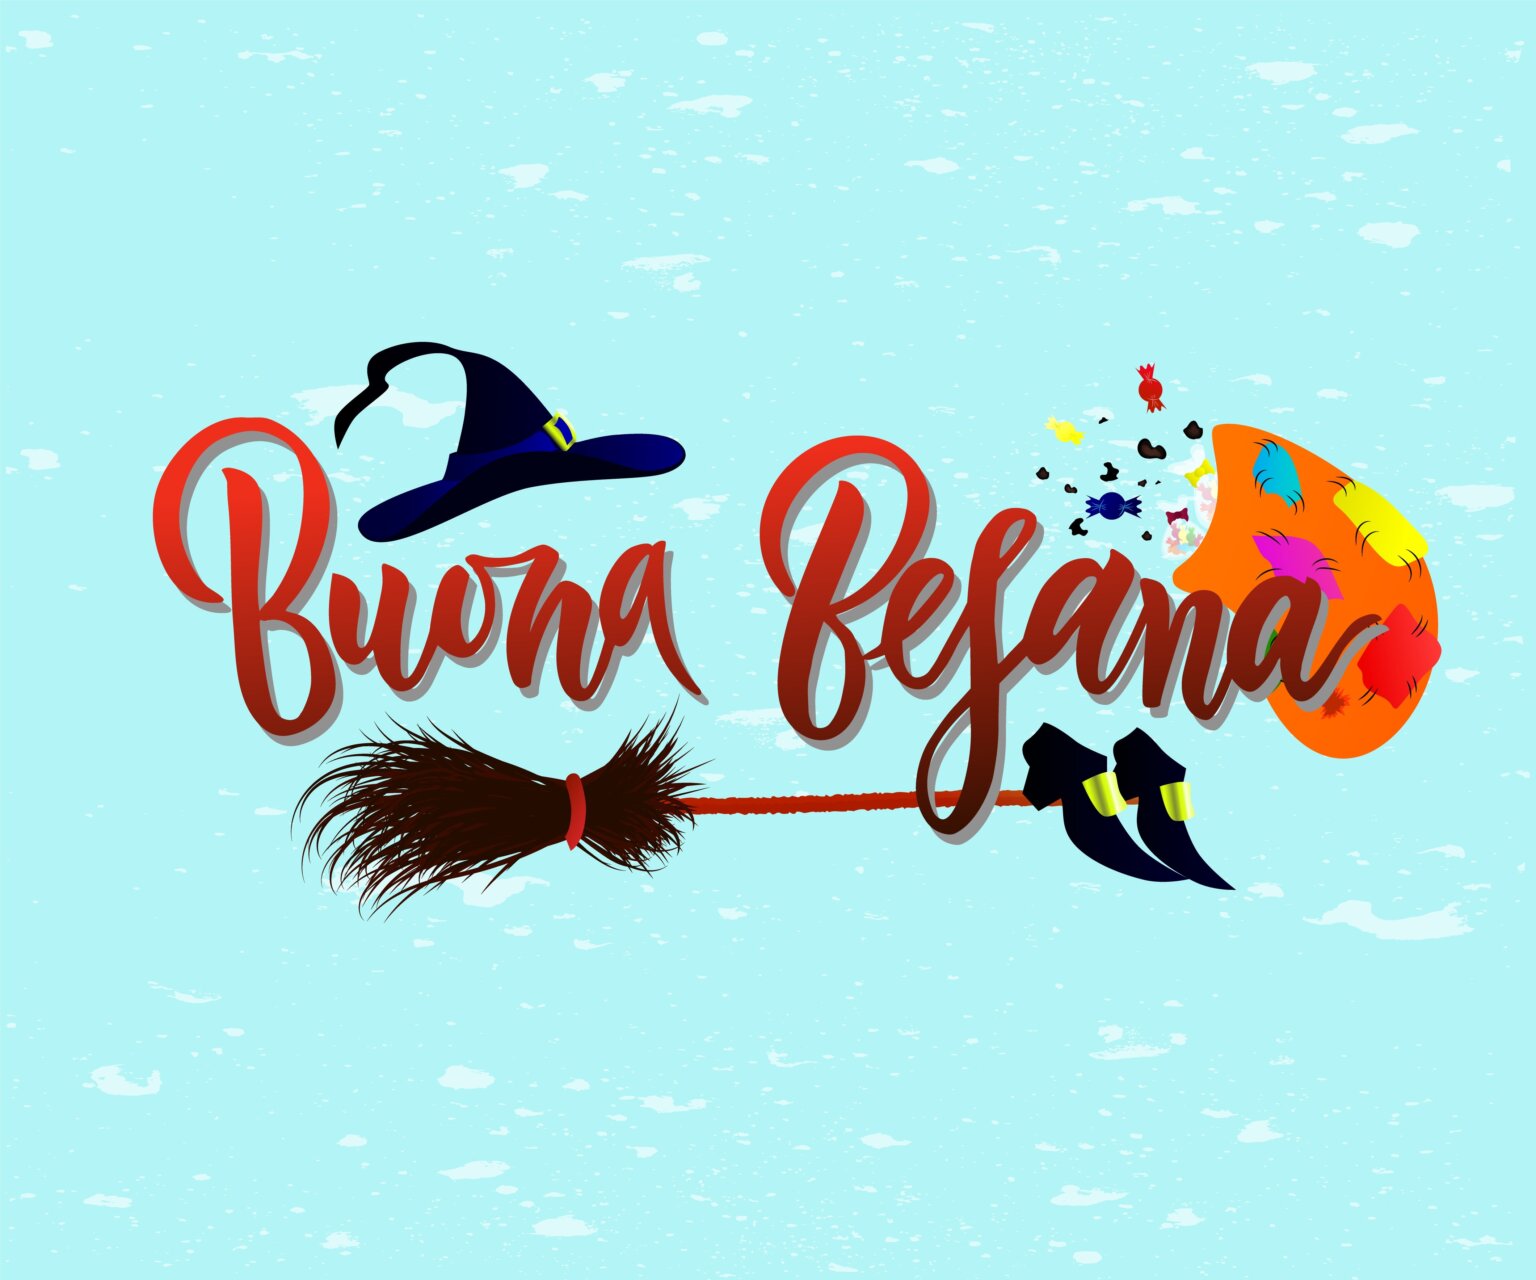 Hand written brush lettering phrase Buona Befana on blue